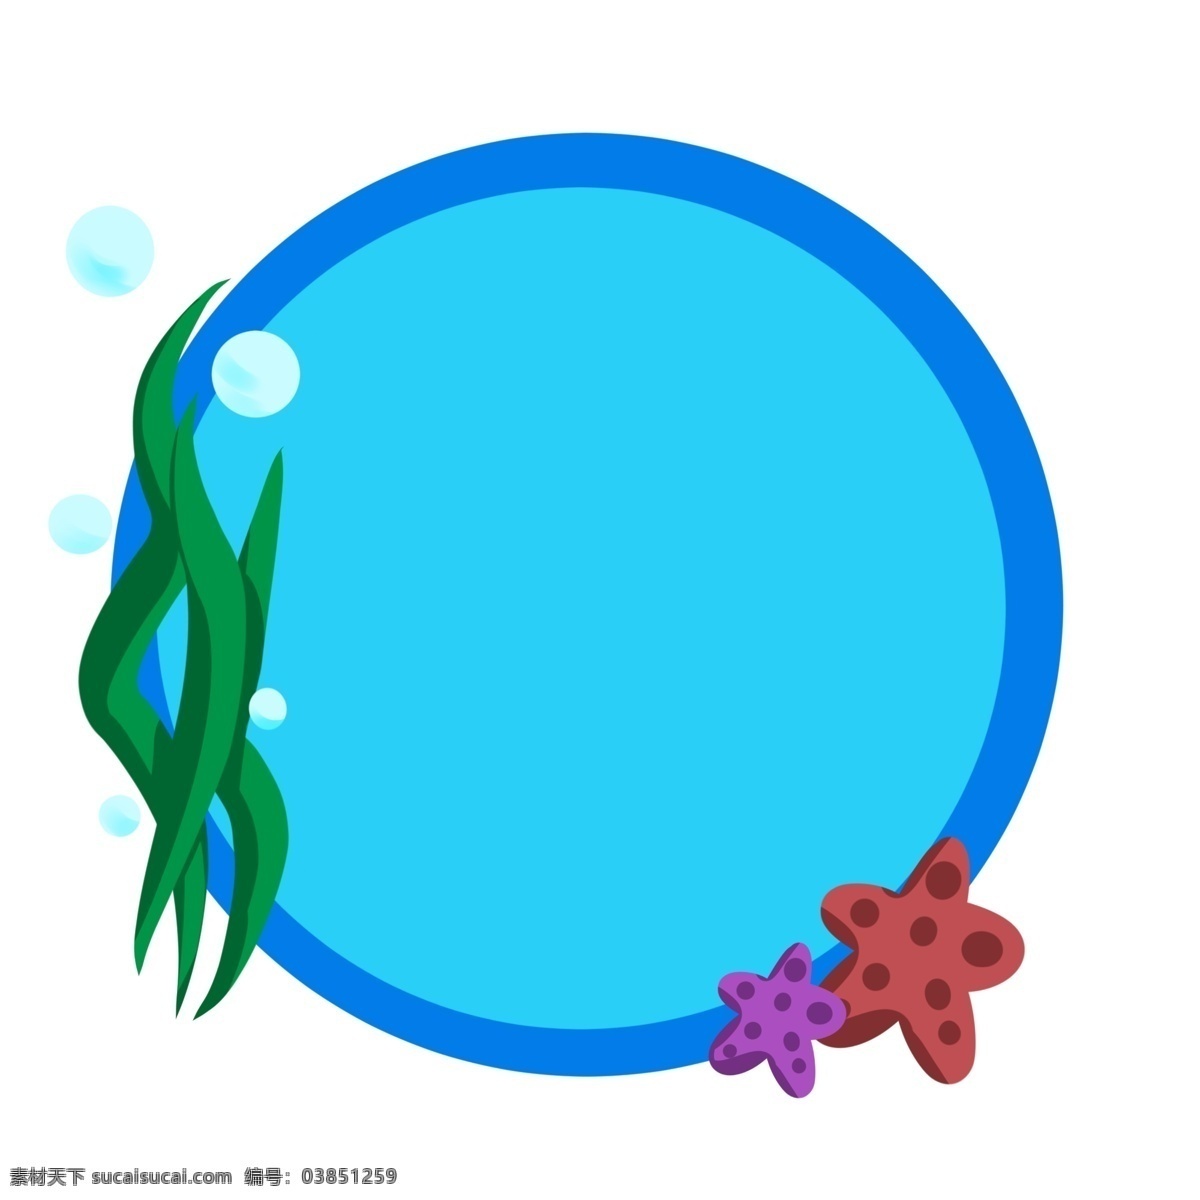 蓝色 海底 边框 插画 蓝色边框 海底边框 海草 圆形边框 海星 气泡 海洋生物 圆环 可爱的边框